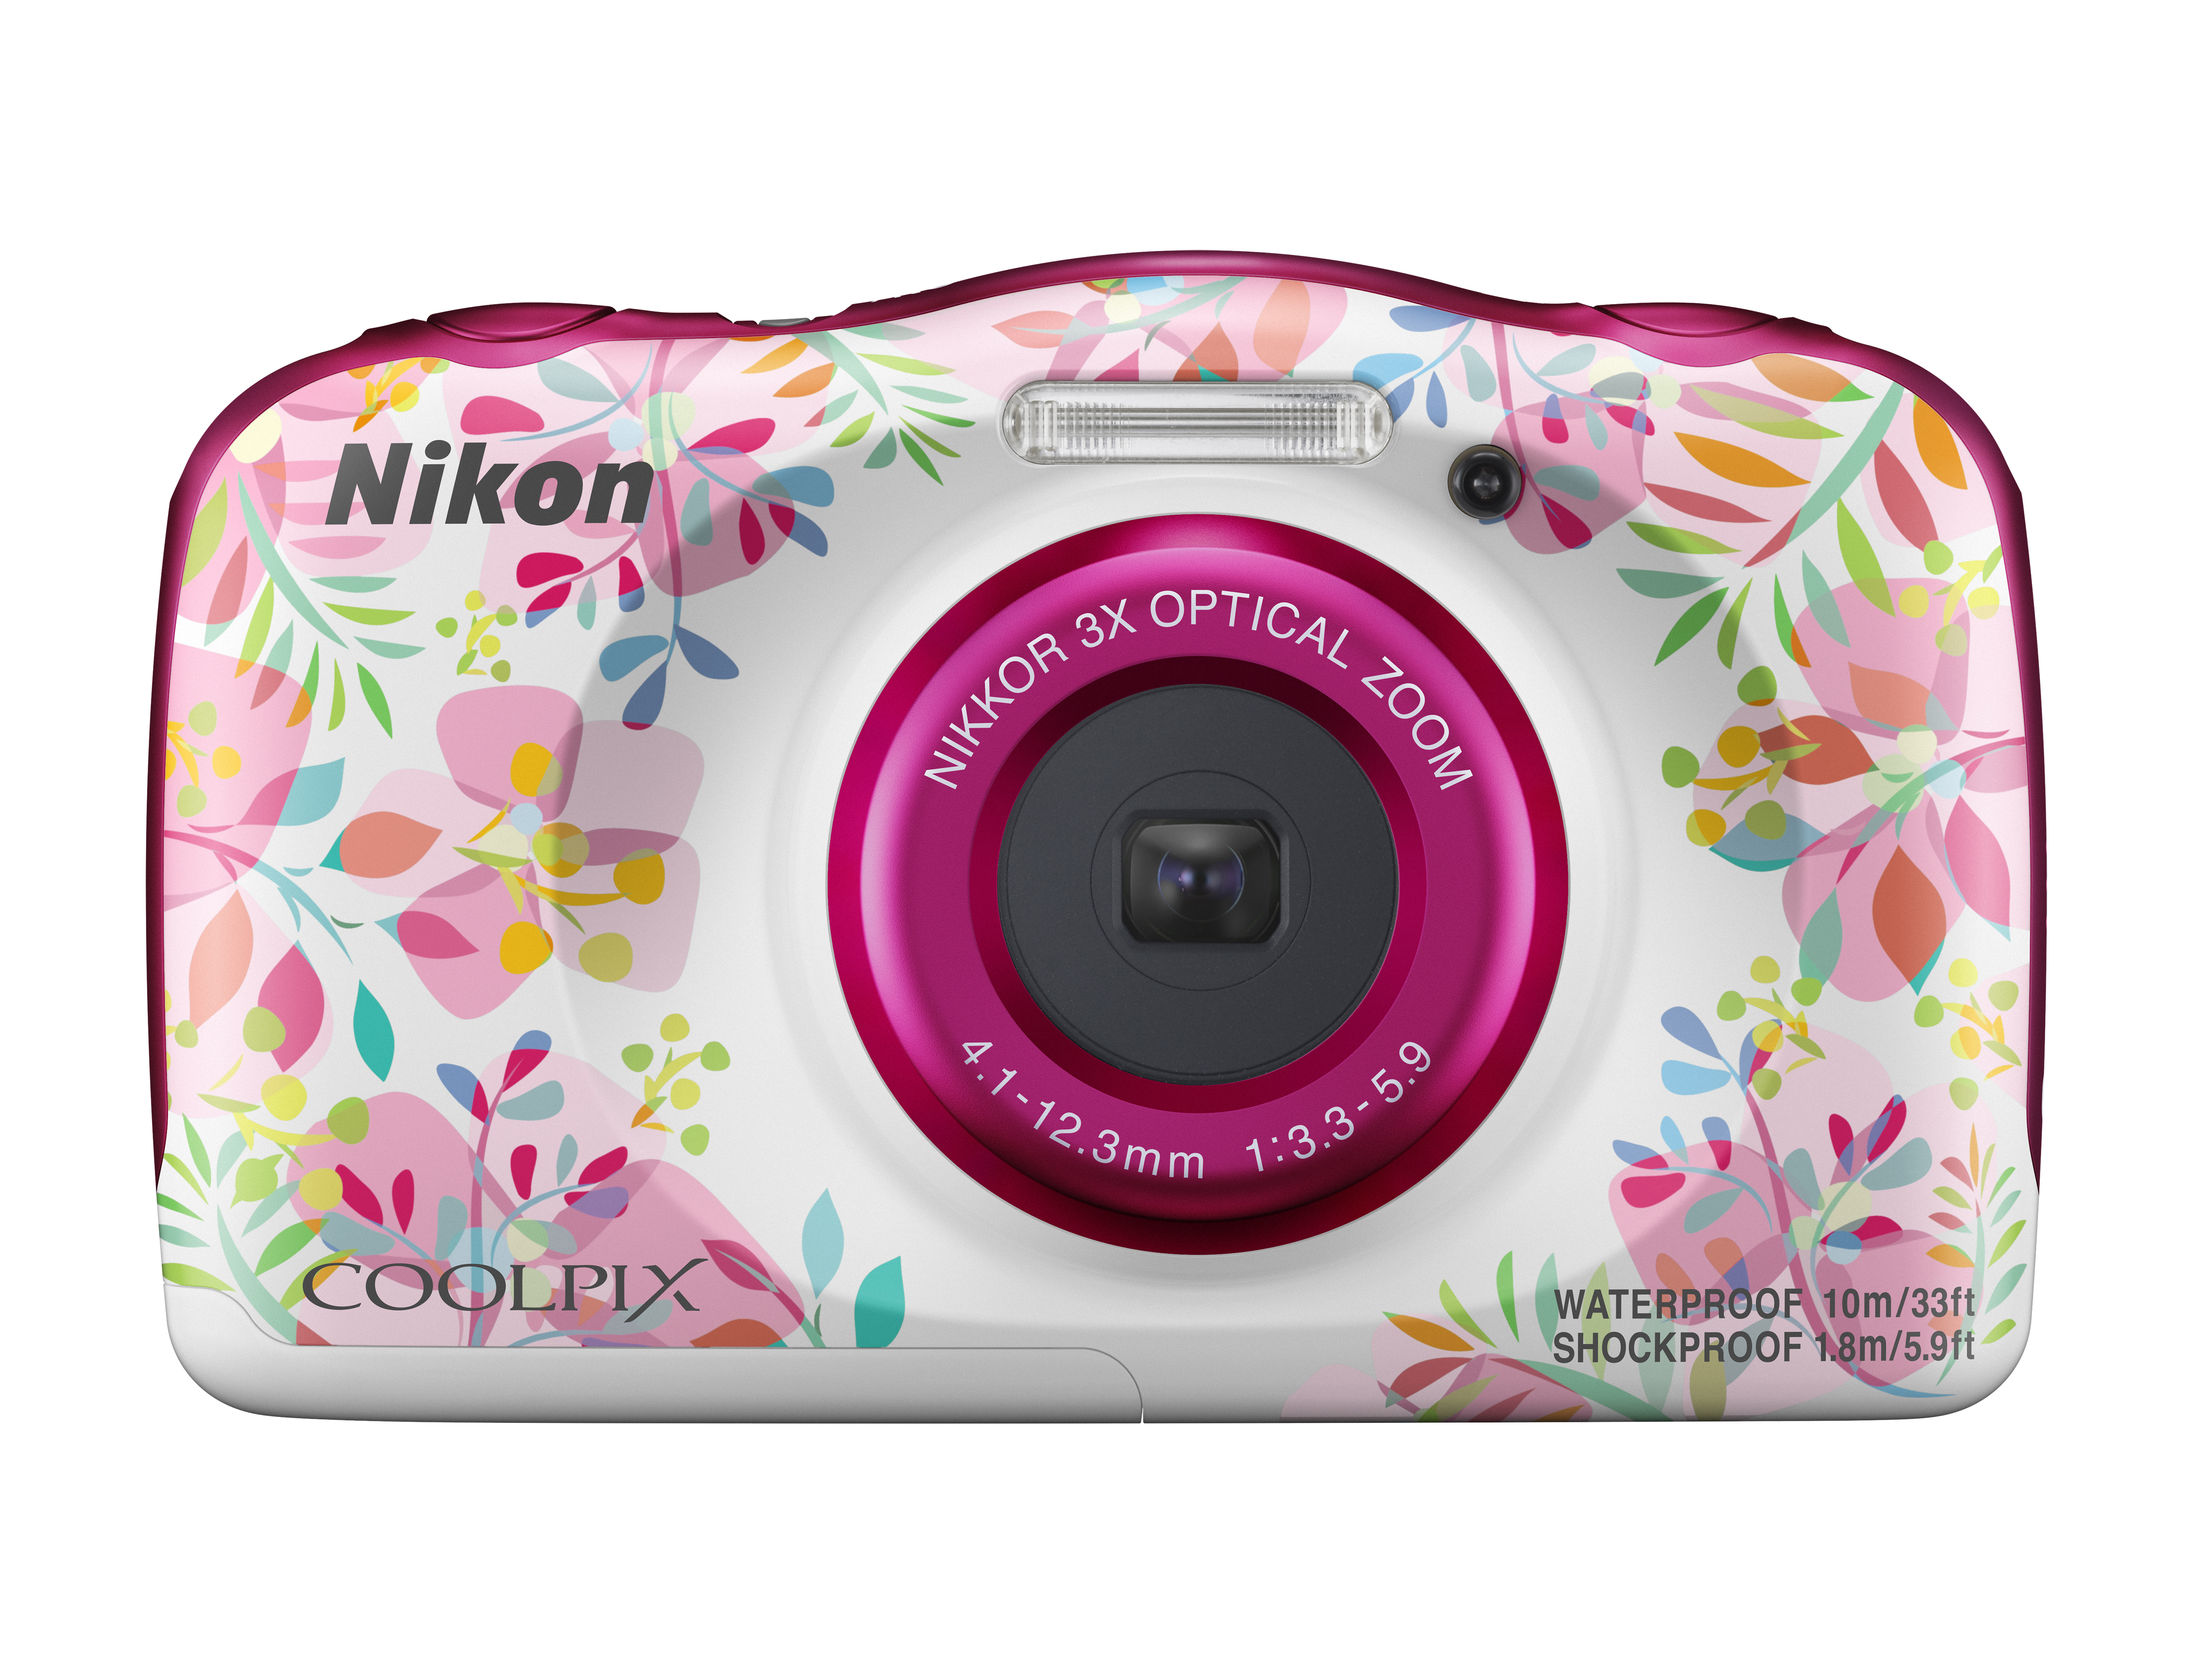 Best camera under £200: Nikon Coolpix W150